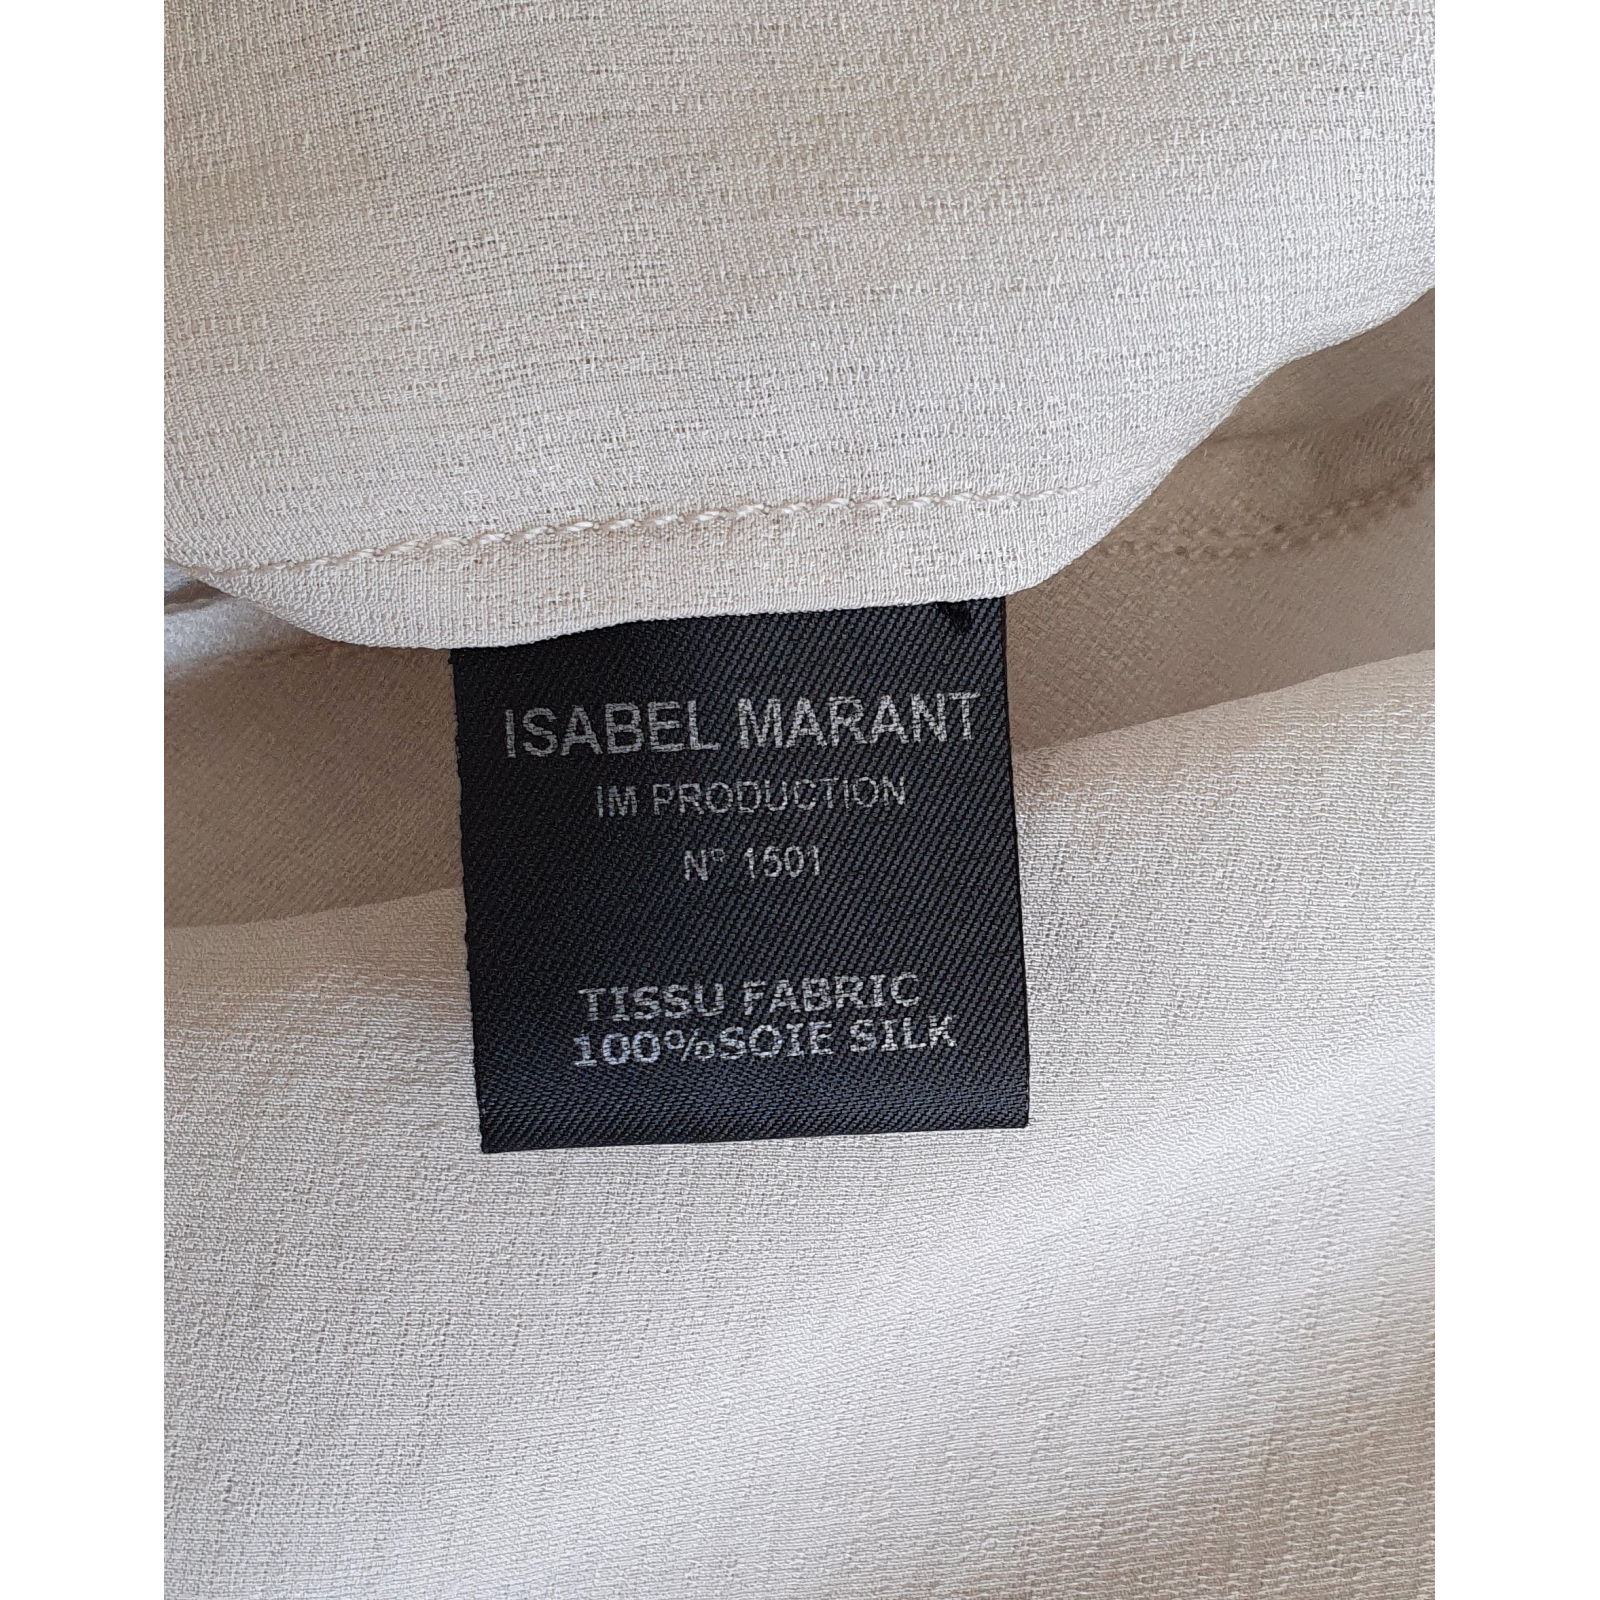 Isabel Marant jedwabna bluzka, nowa 34-36